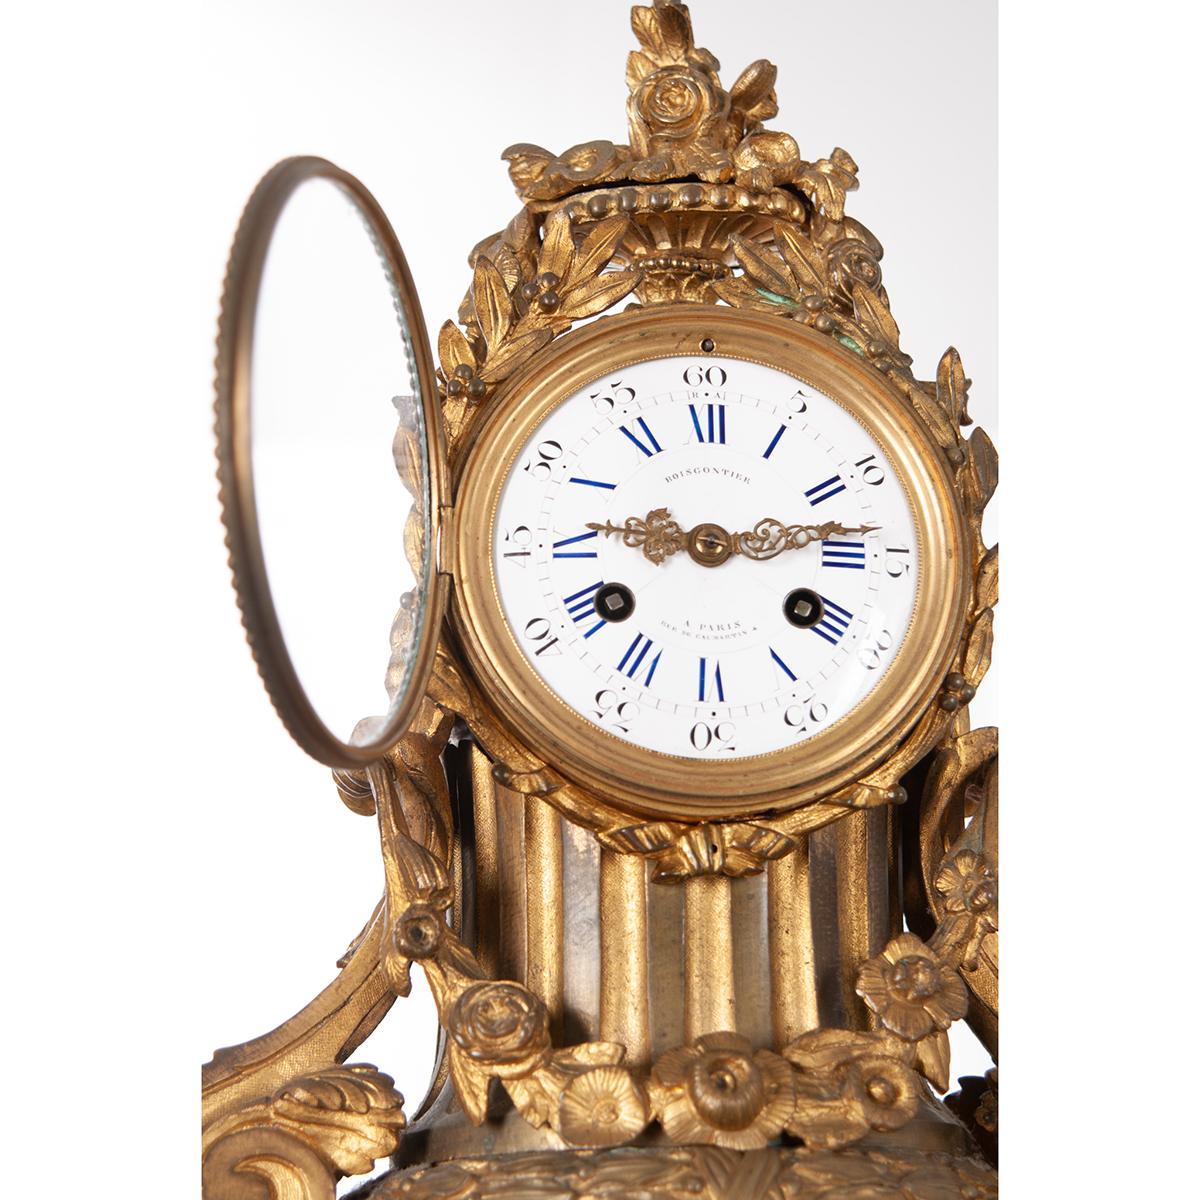 Französische Manteluhr aus Metall mit dem Aufdruck 'Boiscontier a Paris Rue De Caumartin' auf dem Zifferblatt. Das Wappen ist ein Korb mit kunstvollem Blattmotiv über einem symmetrisch geformten Gehäuse. Der Schlüssel betätigt das Uhrwerk der Uhr